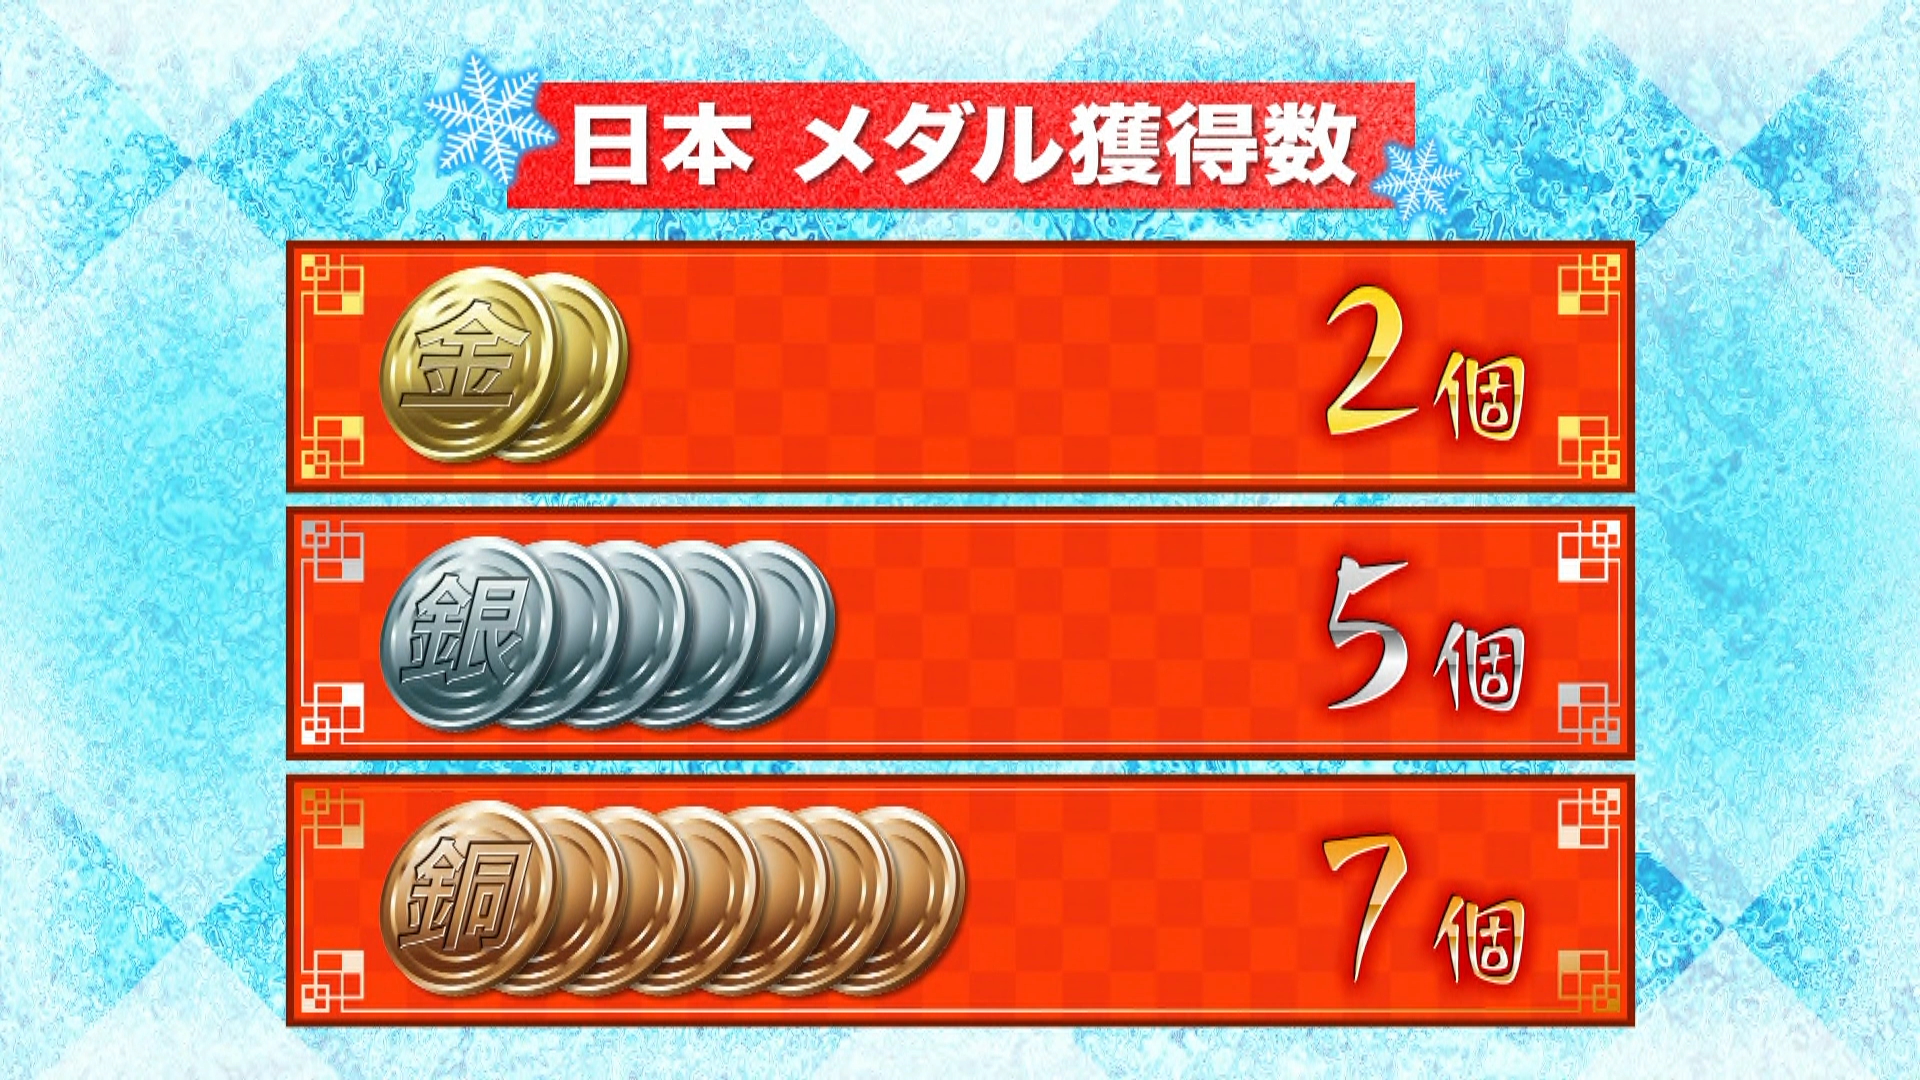 日本のメダル計14個に 冬季五輪で最多 金2個 銀5個 銅7個 読売テレビニュース